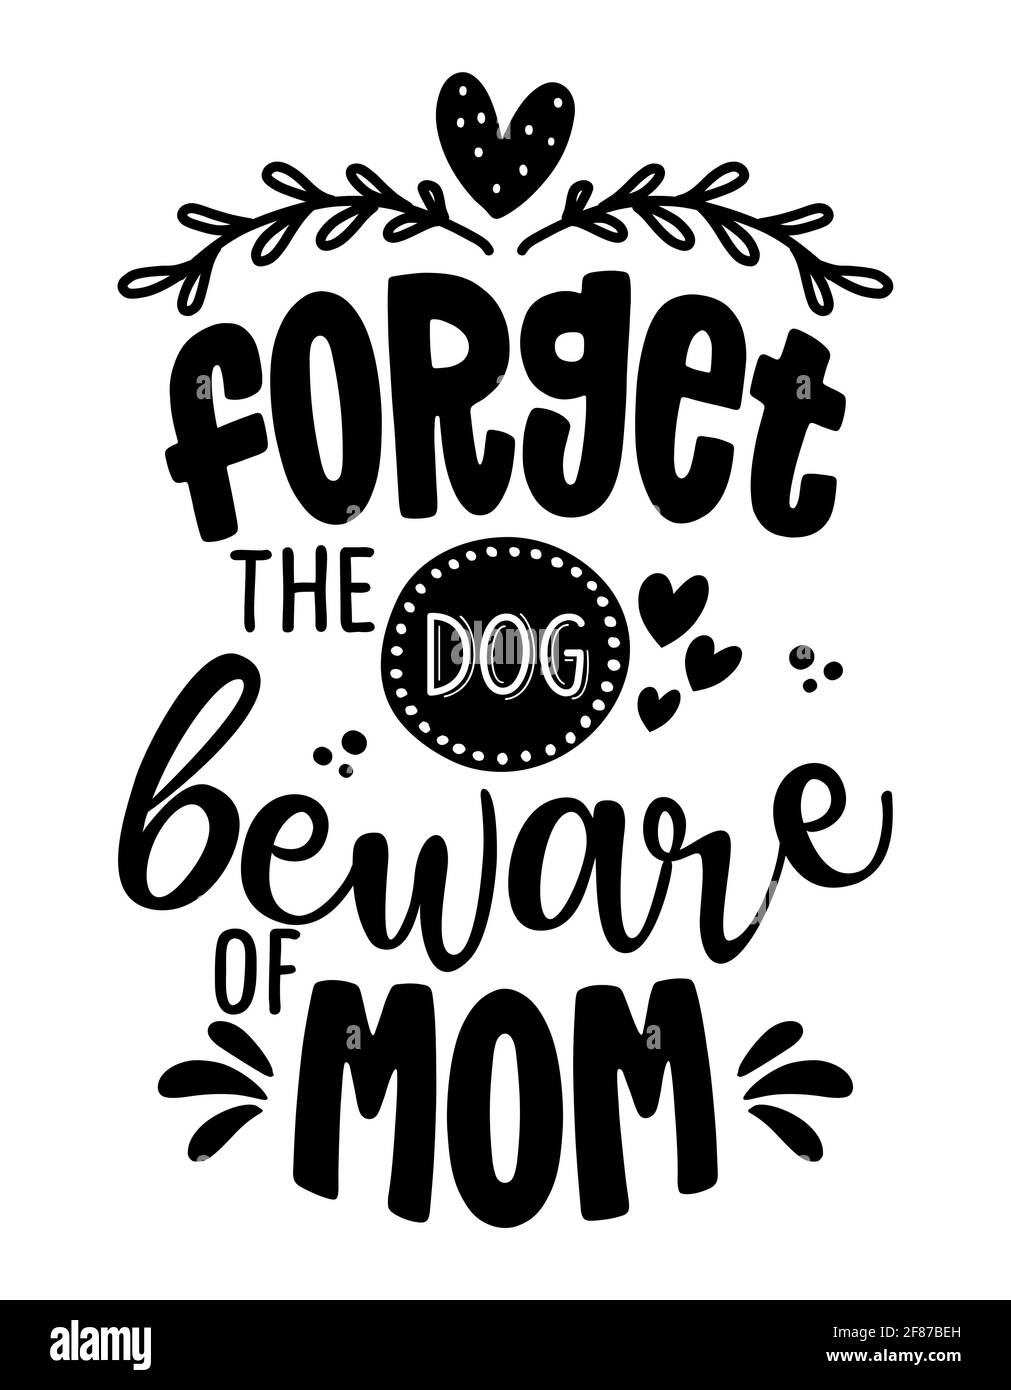 Dimentichi il cane, attenzione di mamma - avvertimento divertente testo di calligraphy del giorno della madre. Adatto per camicie di moda, poster, regali o altre tipografiche. Motivati Illustrazione Vettoriale